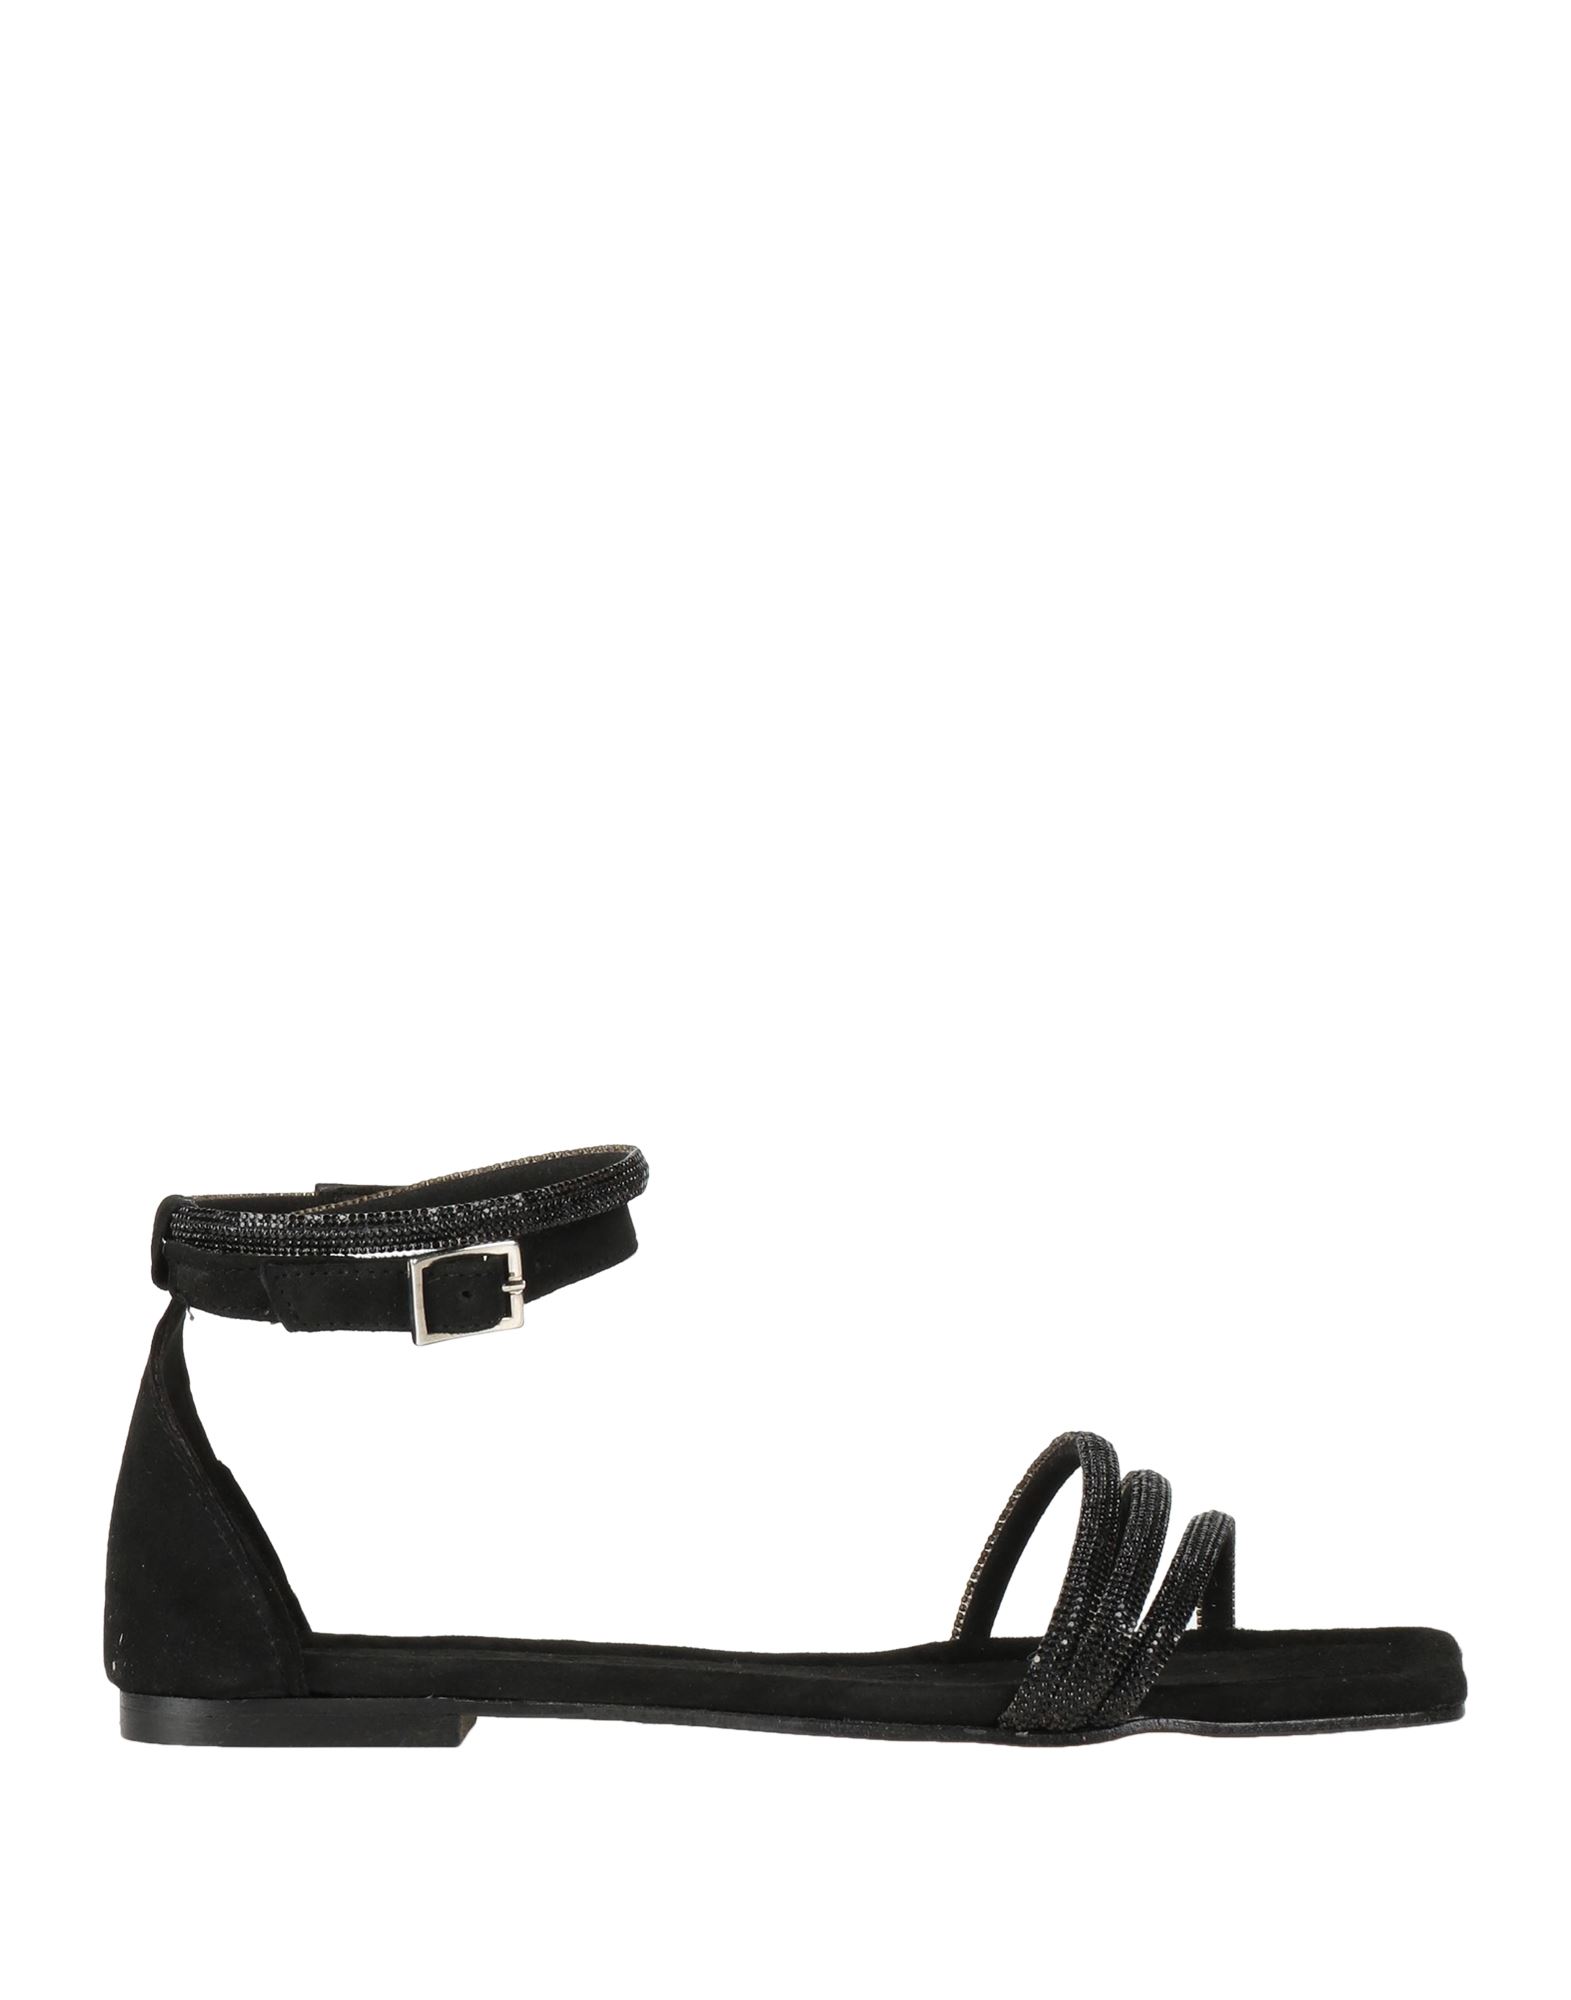 Brawn's Sandals In Black